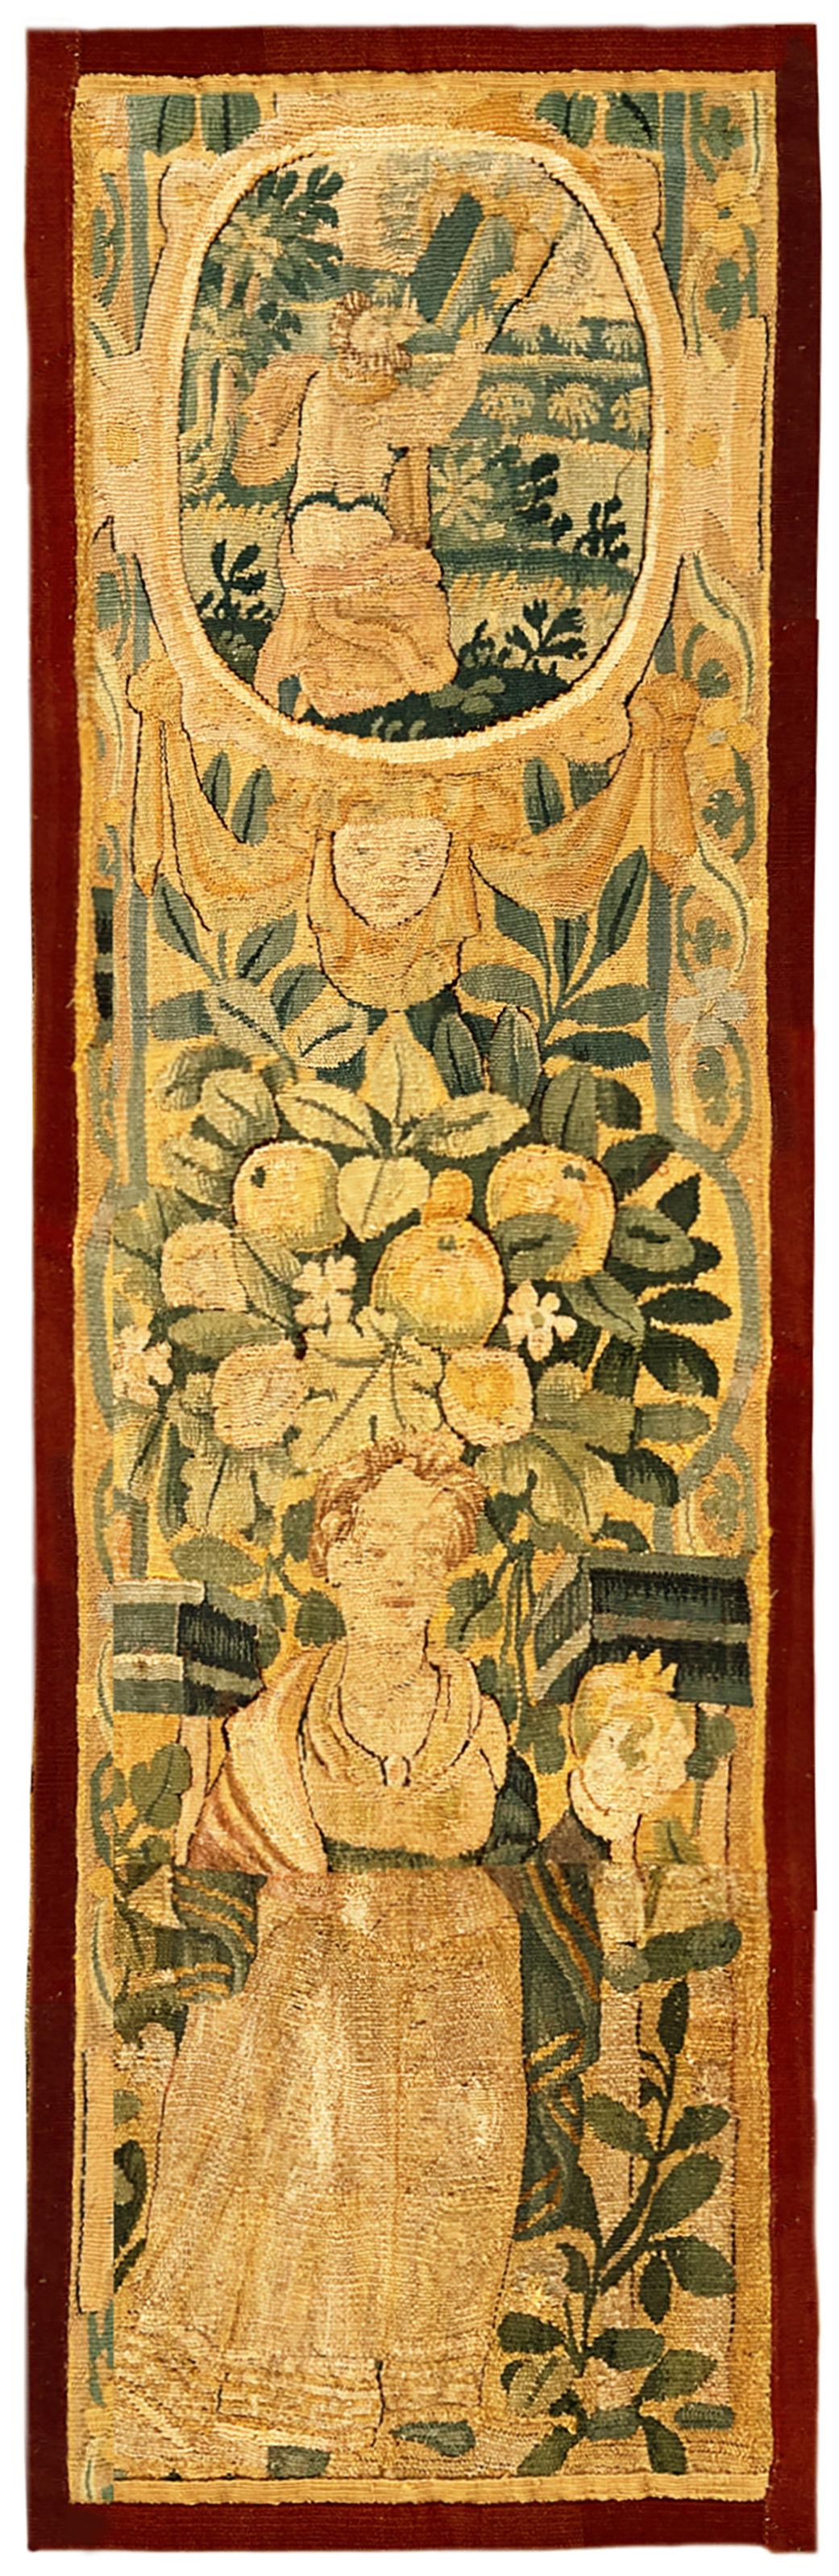 Panneau de tapisserie historique flamande du 17ème siècle, avec figures féminines, verticale